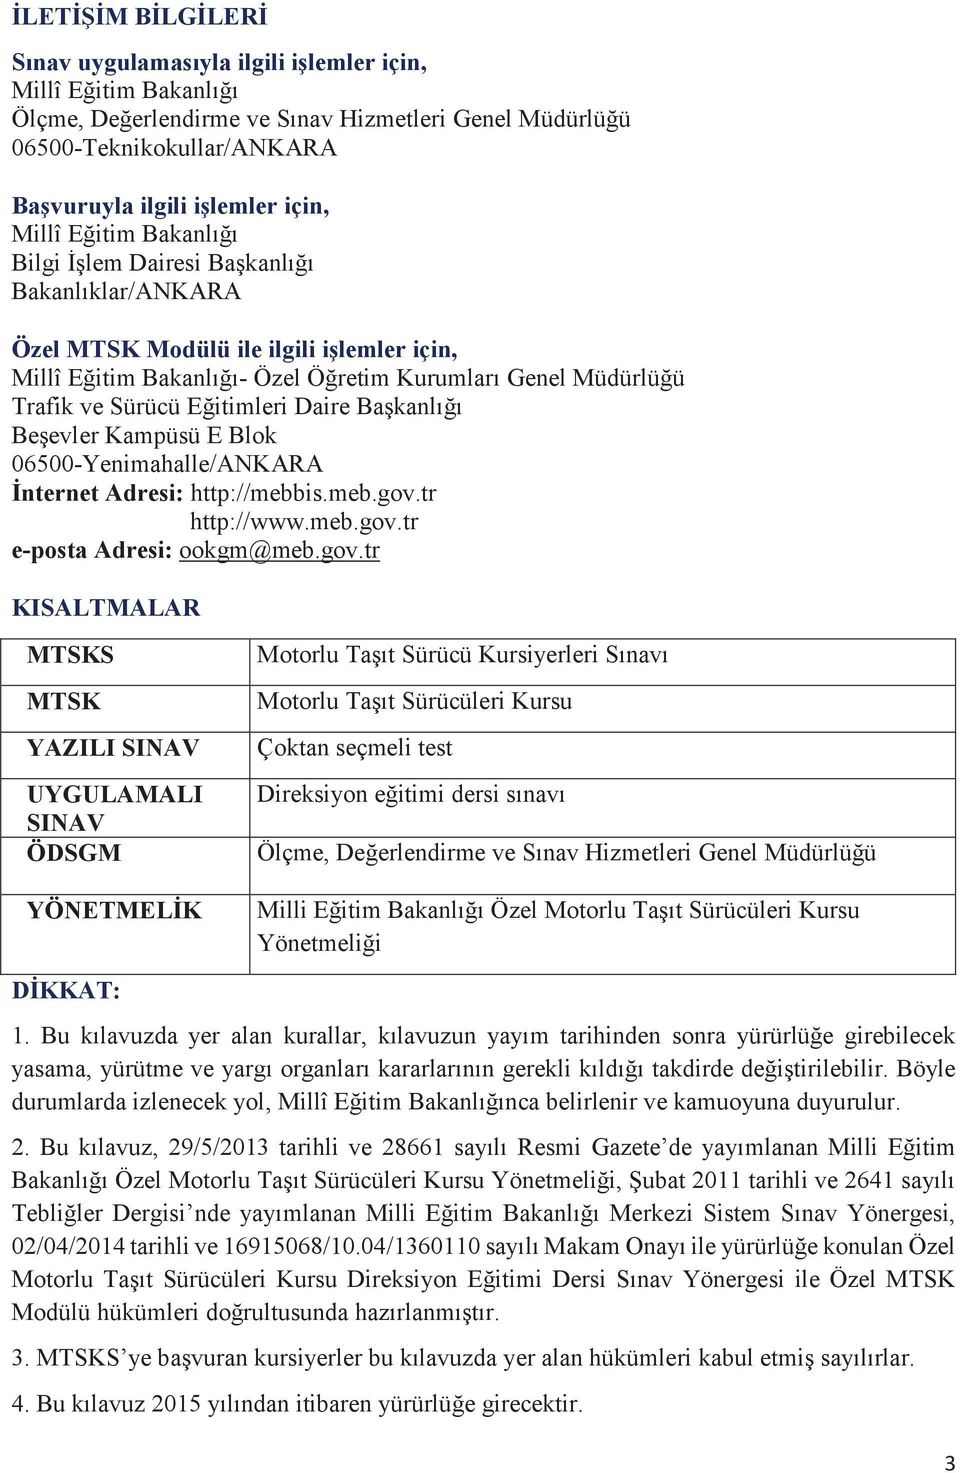 Sürücü Eğitimleri Daire Başkanlığı Beşevler Kampüsü E Blok 06500-Yenimahalle/ANKARA İnternet Adresi: http://mebbis.meb.gov.